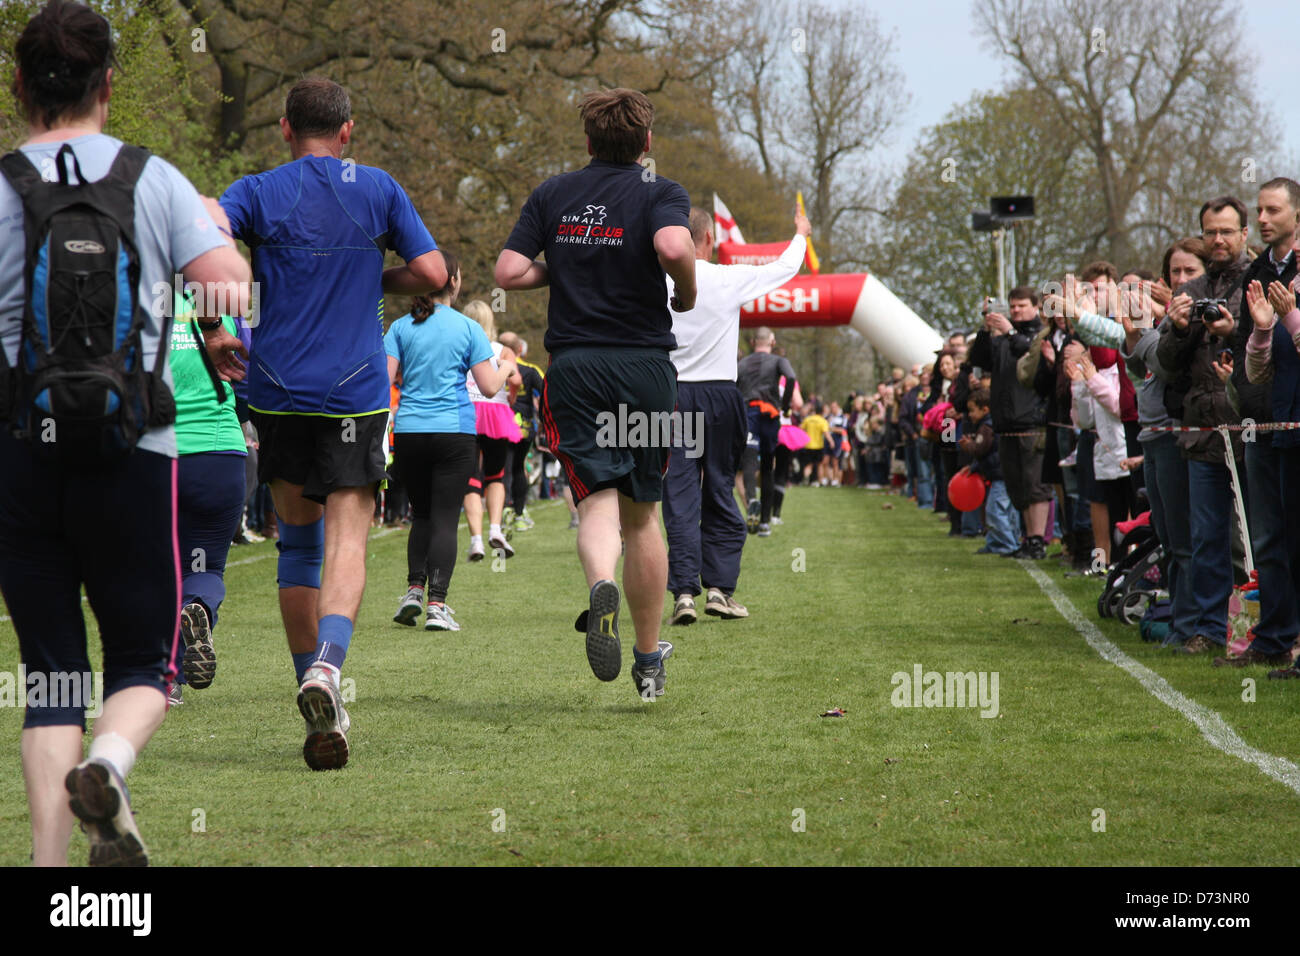 Dimanche 28 avril 2013, Stratford upon Avon, Royaume-Uni. Shakespeare rotatif Marathon et Demi-marathon. Alamy Live News Banque D'Images